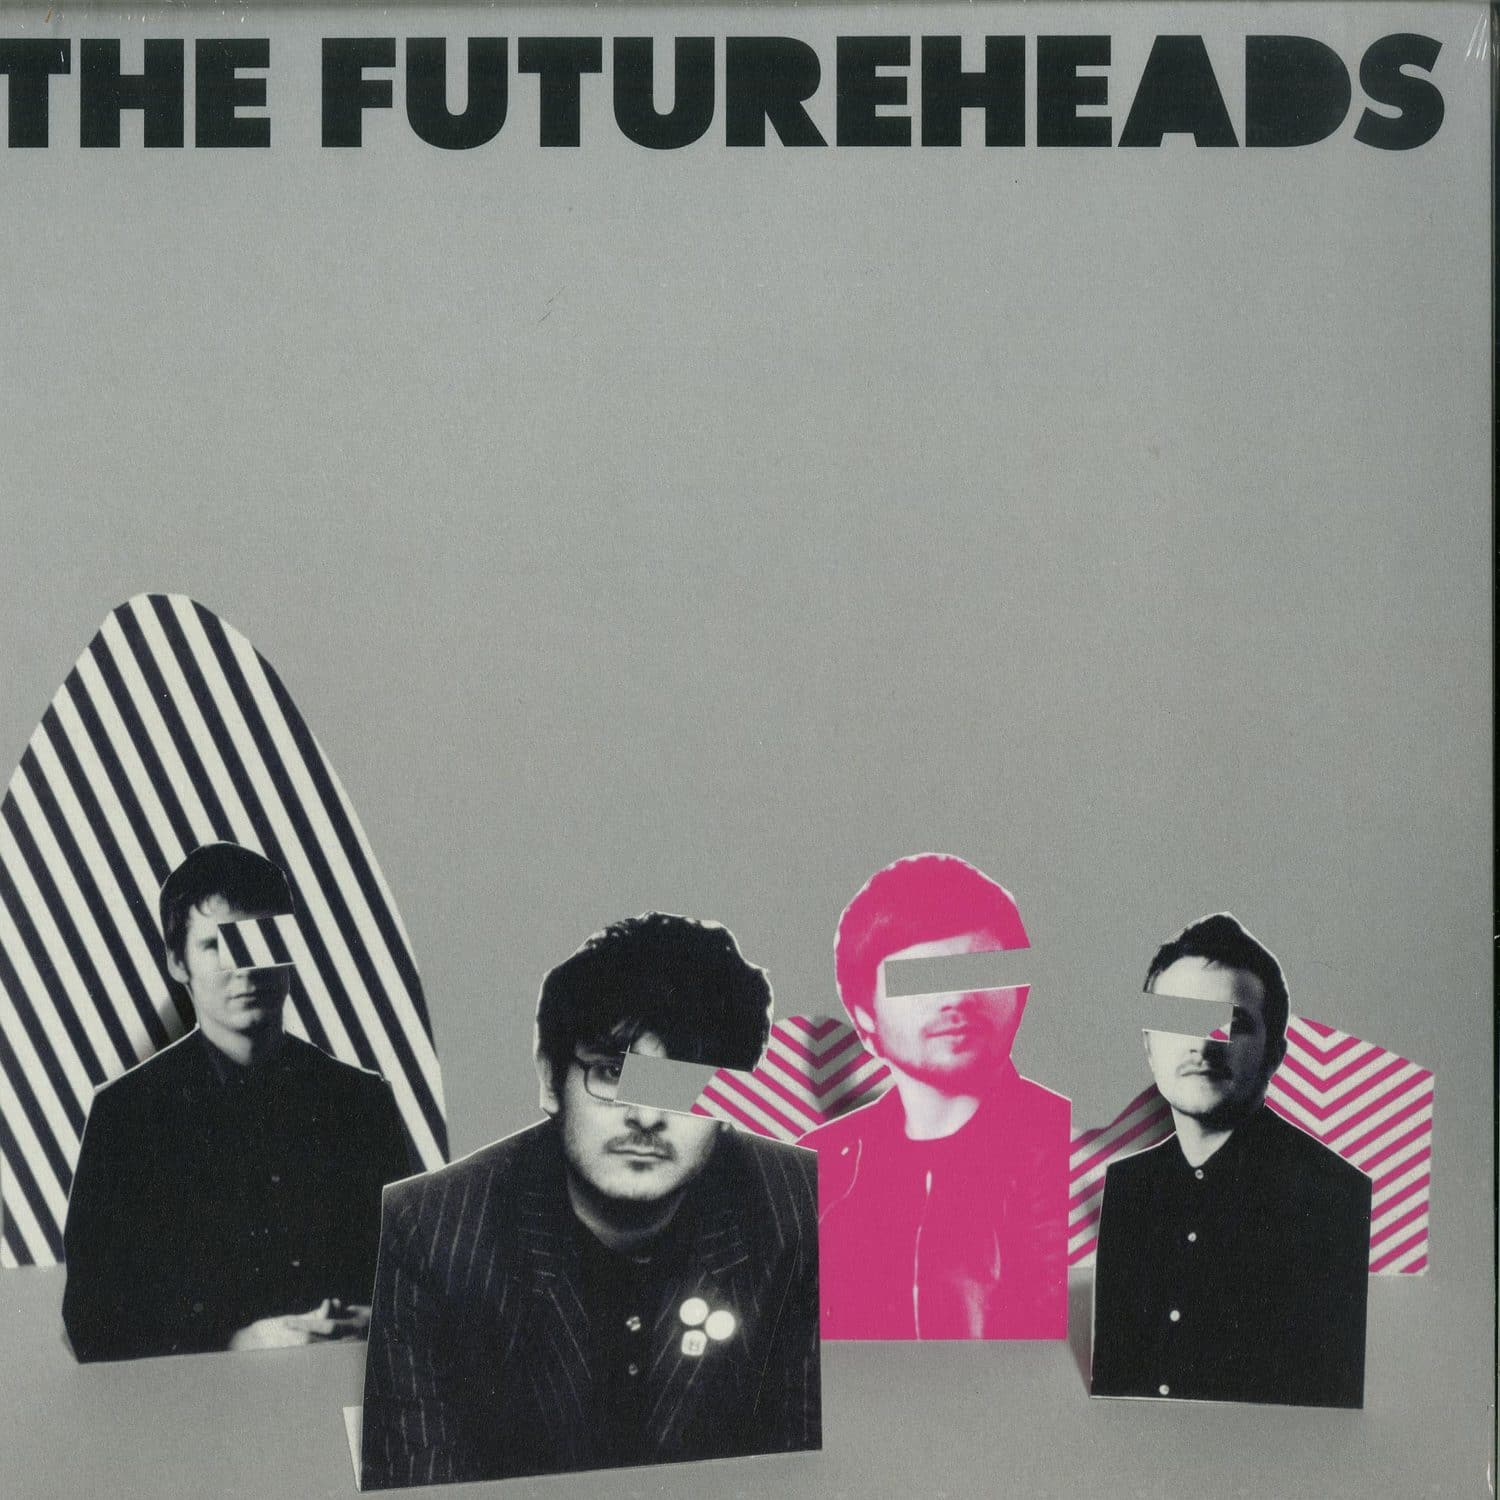 The Futureheads - THE FUTUREHEADS 